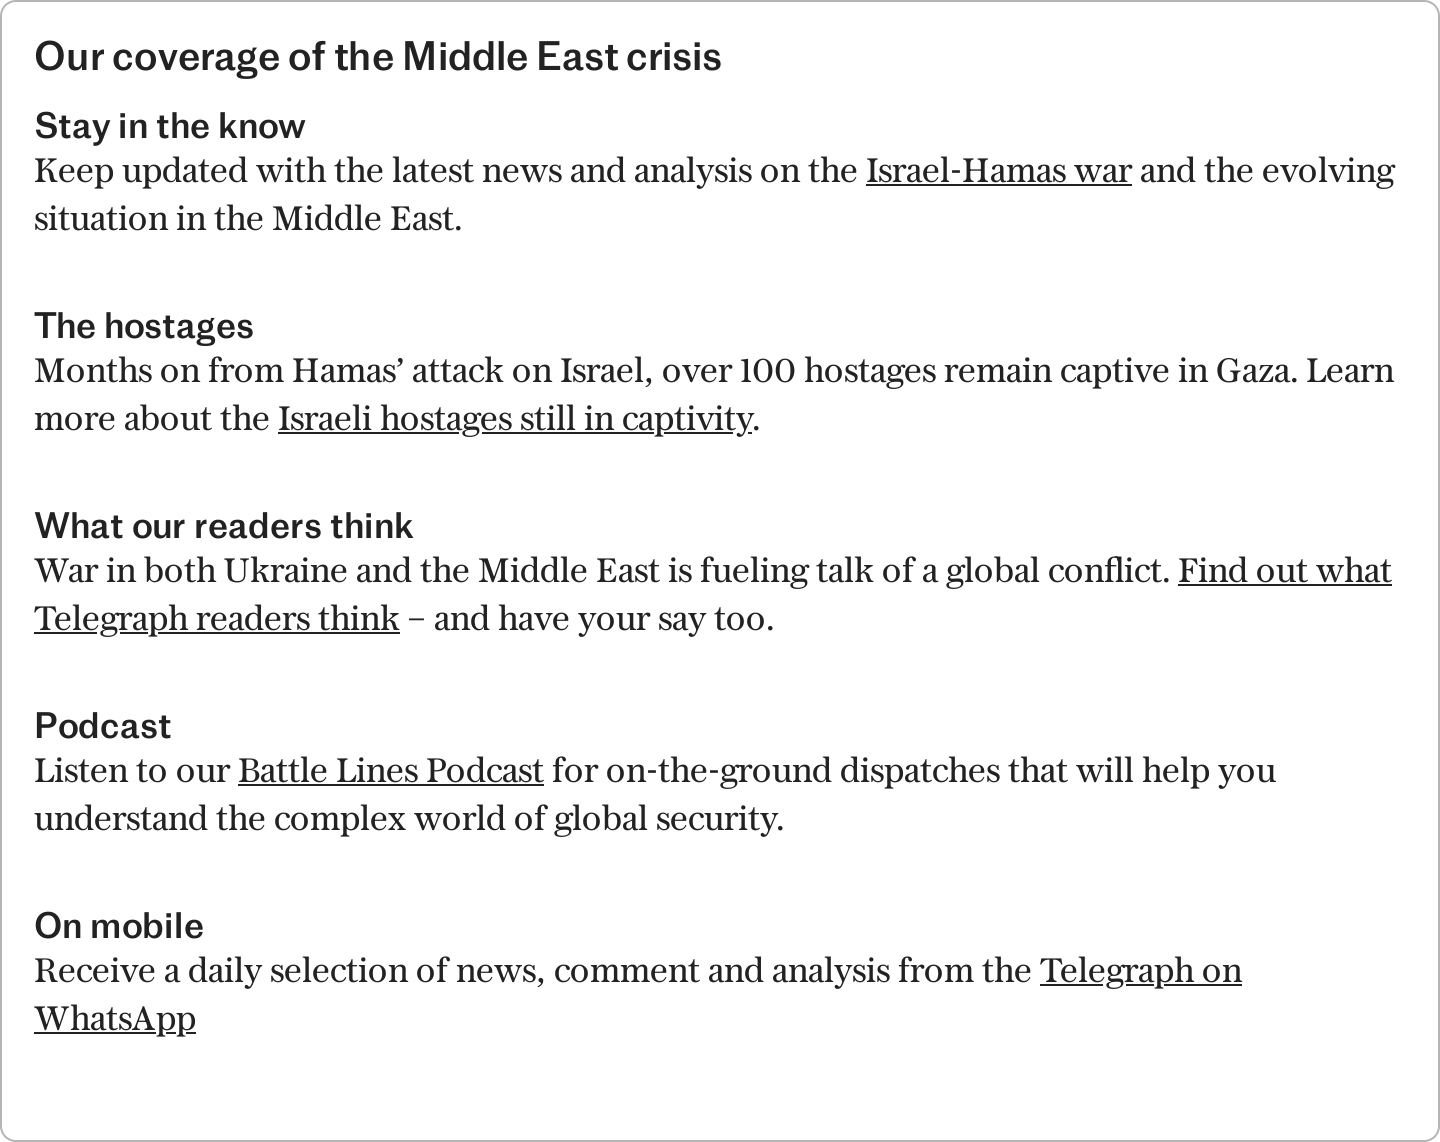 israel threatens imminent rafah invasion if ceasefire talks collapse